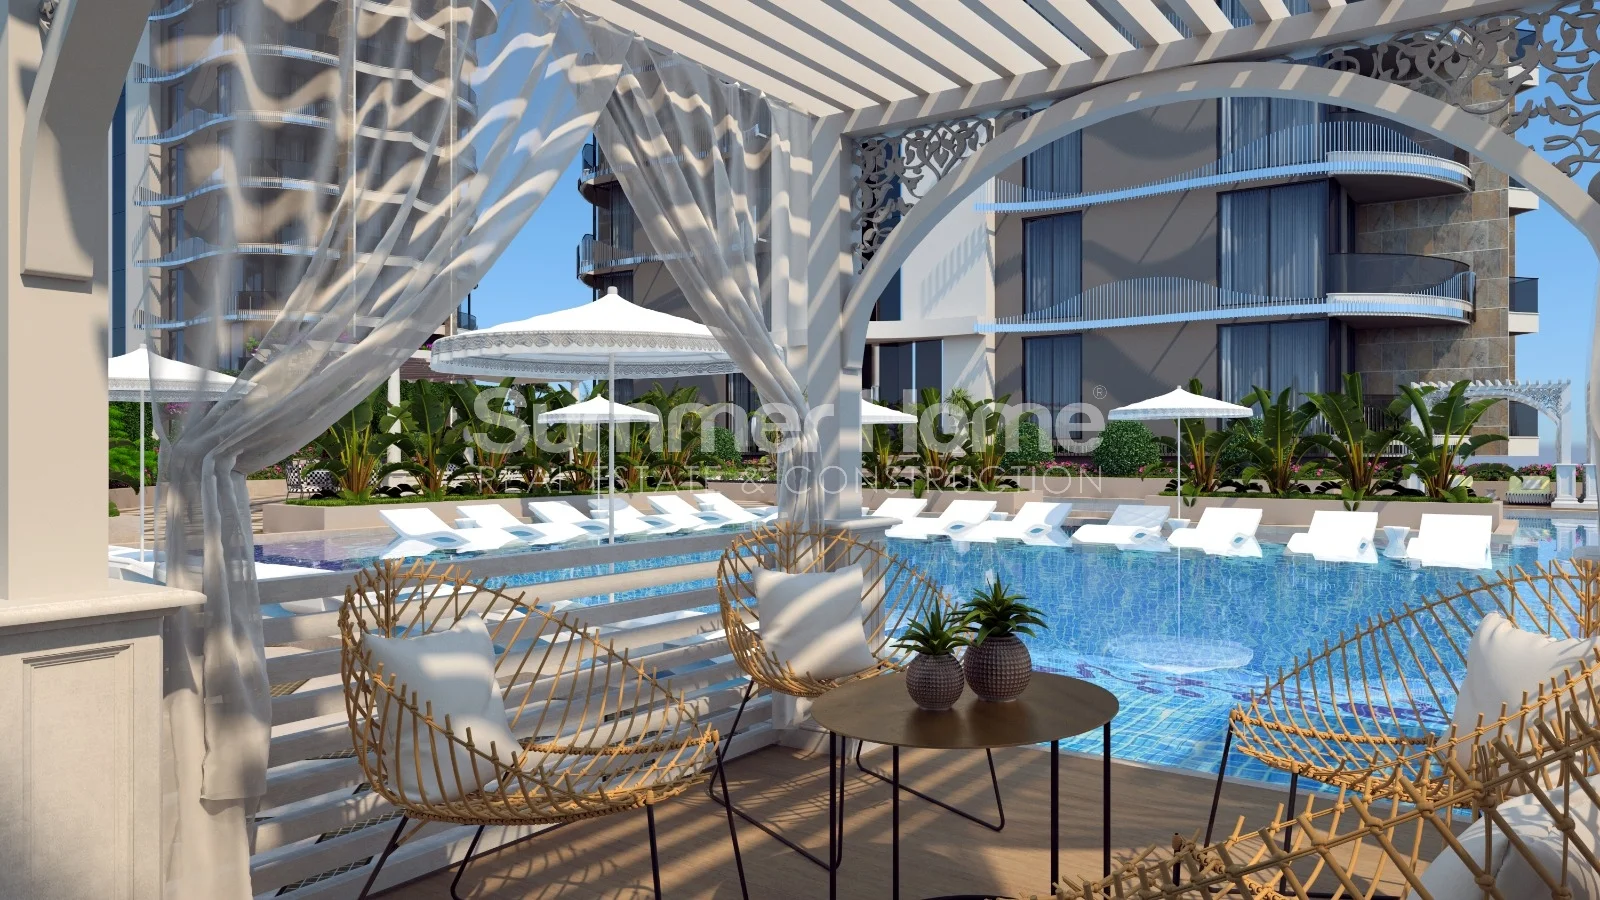 Apartamente moderne me pamje nga deti në Tosmurin e mrekullueshëm facilities - 22